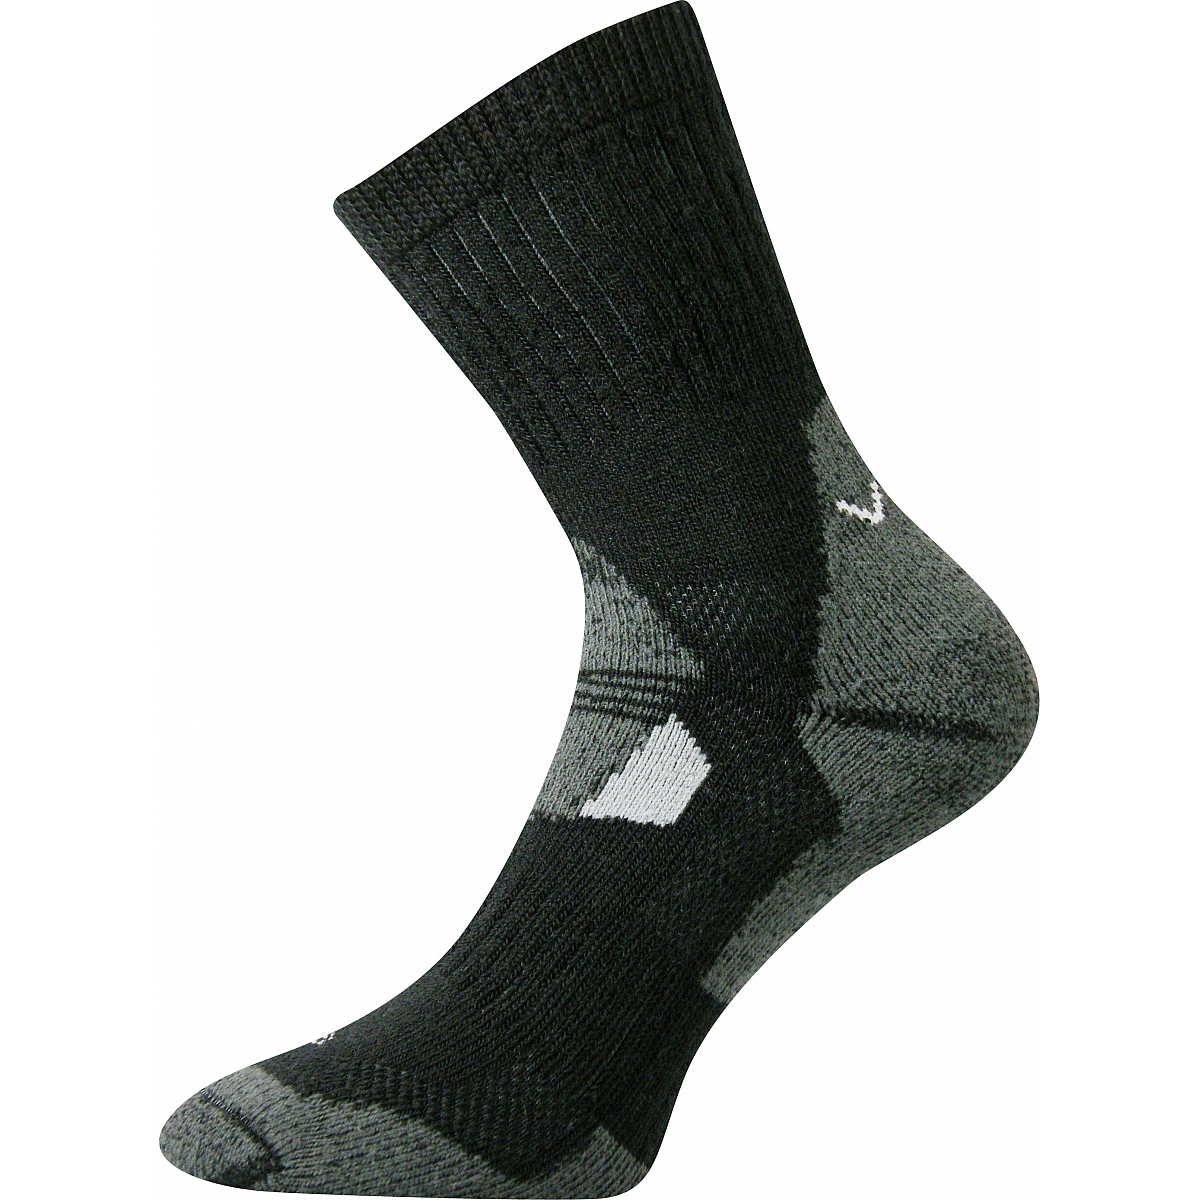 Extra teplé vlněné ponožky Voxx Stabil - černé-šedé, 43-46